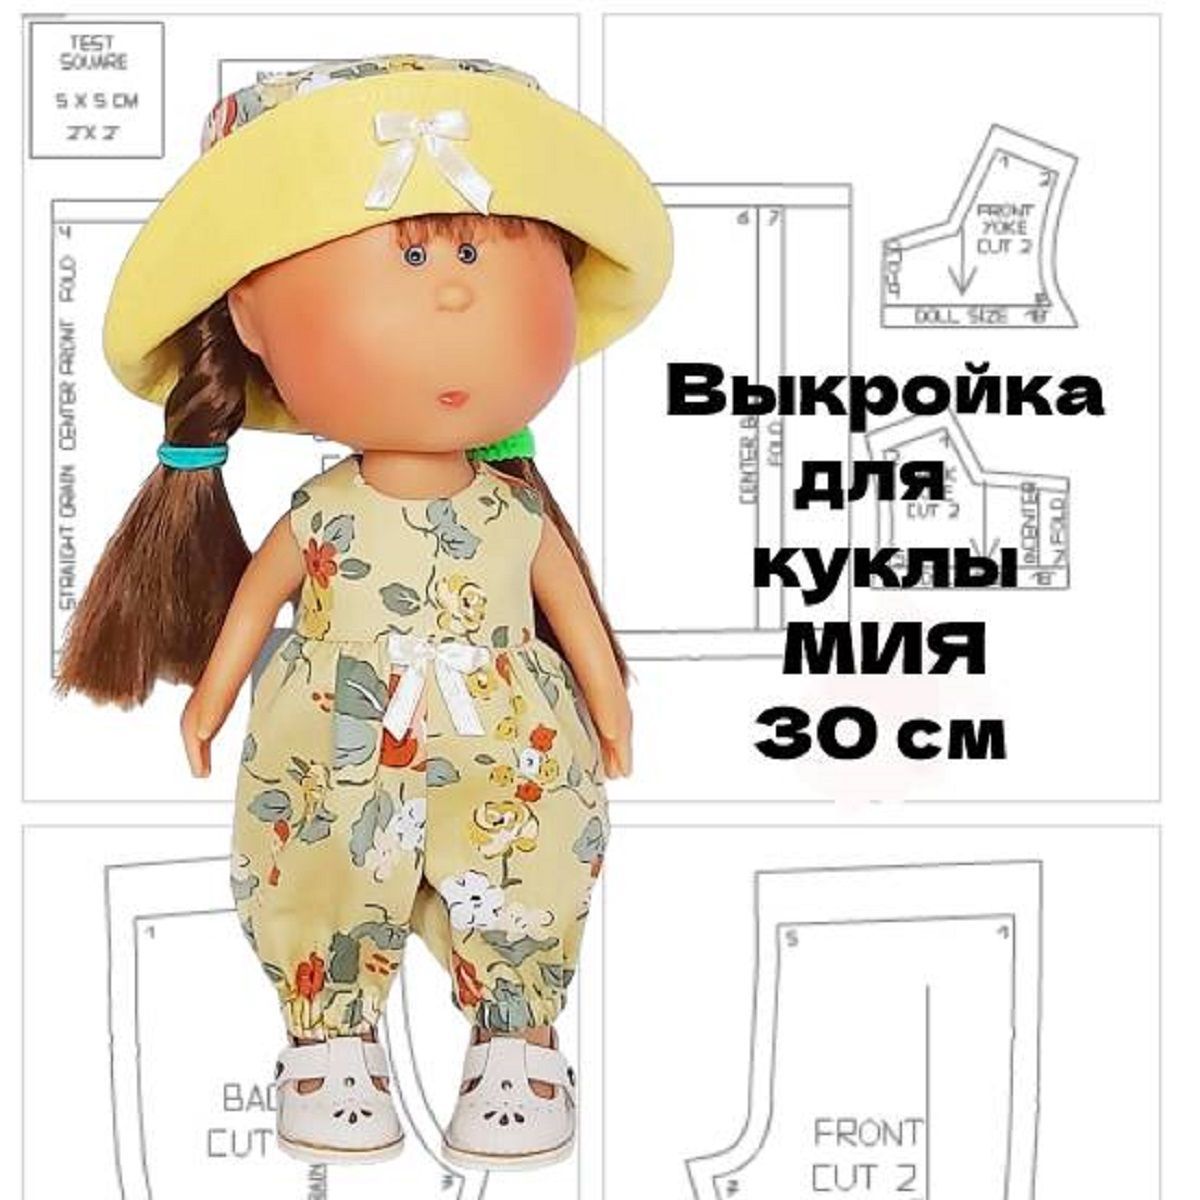 Как сделать шляпку для куклы своими руками